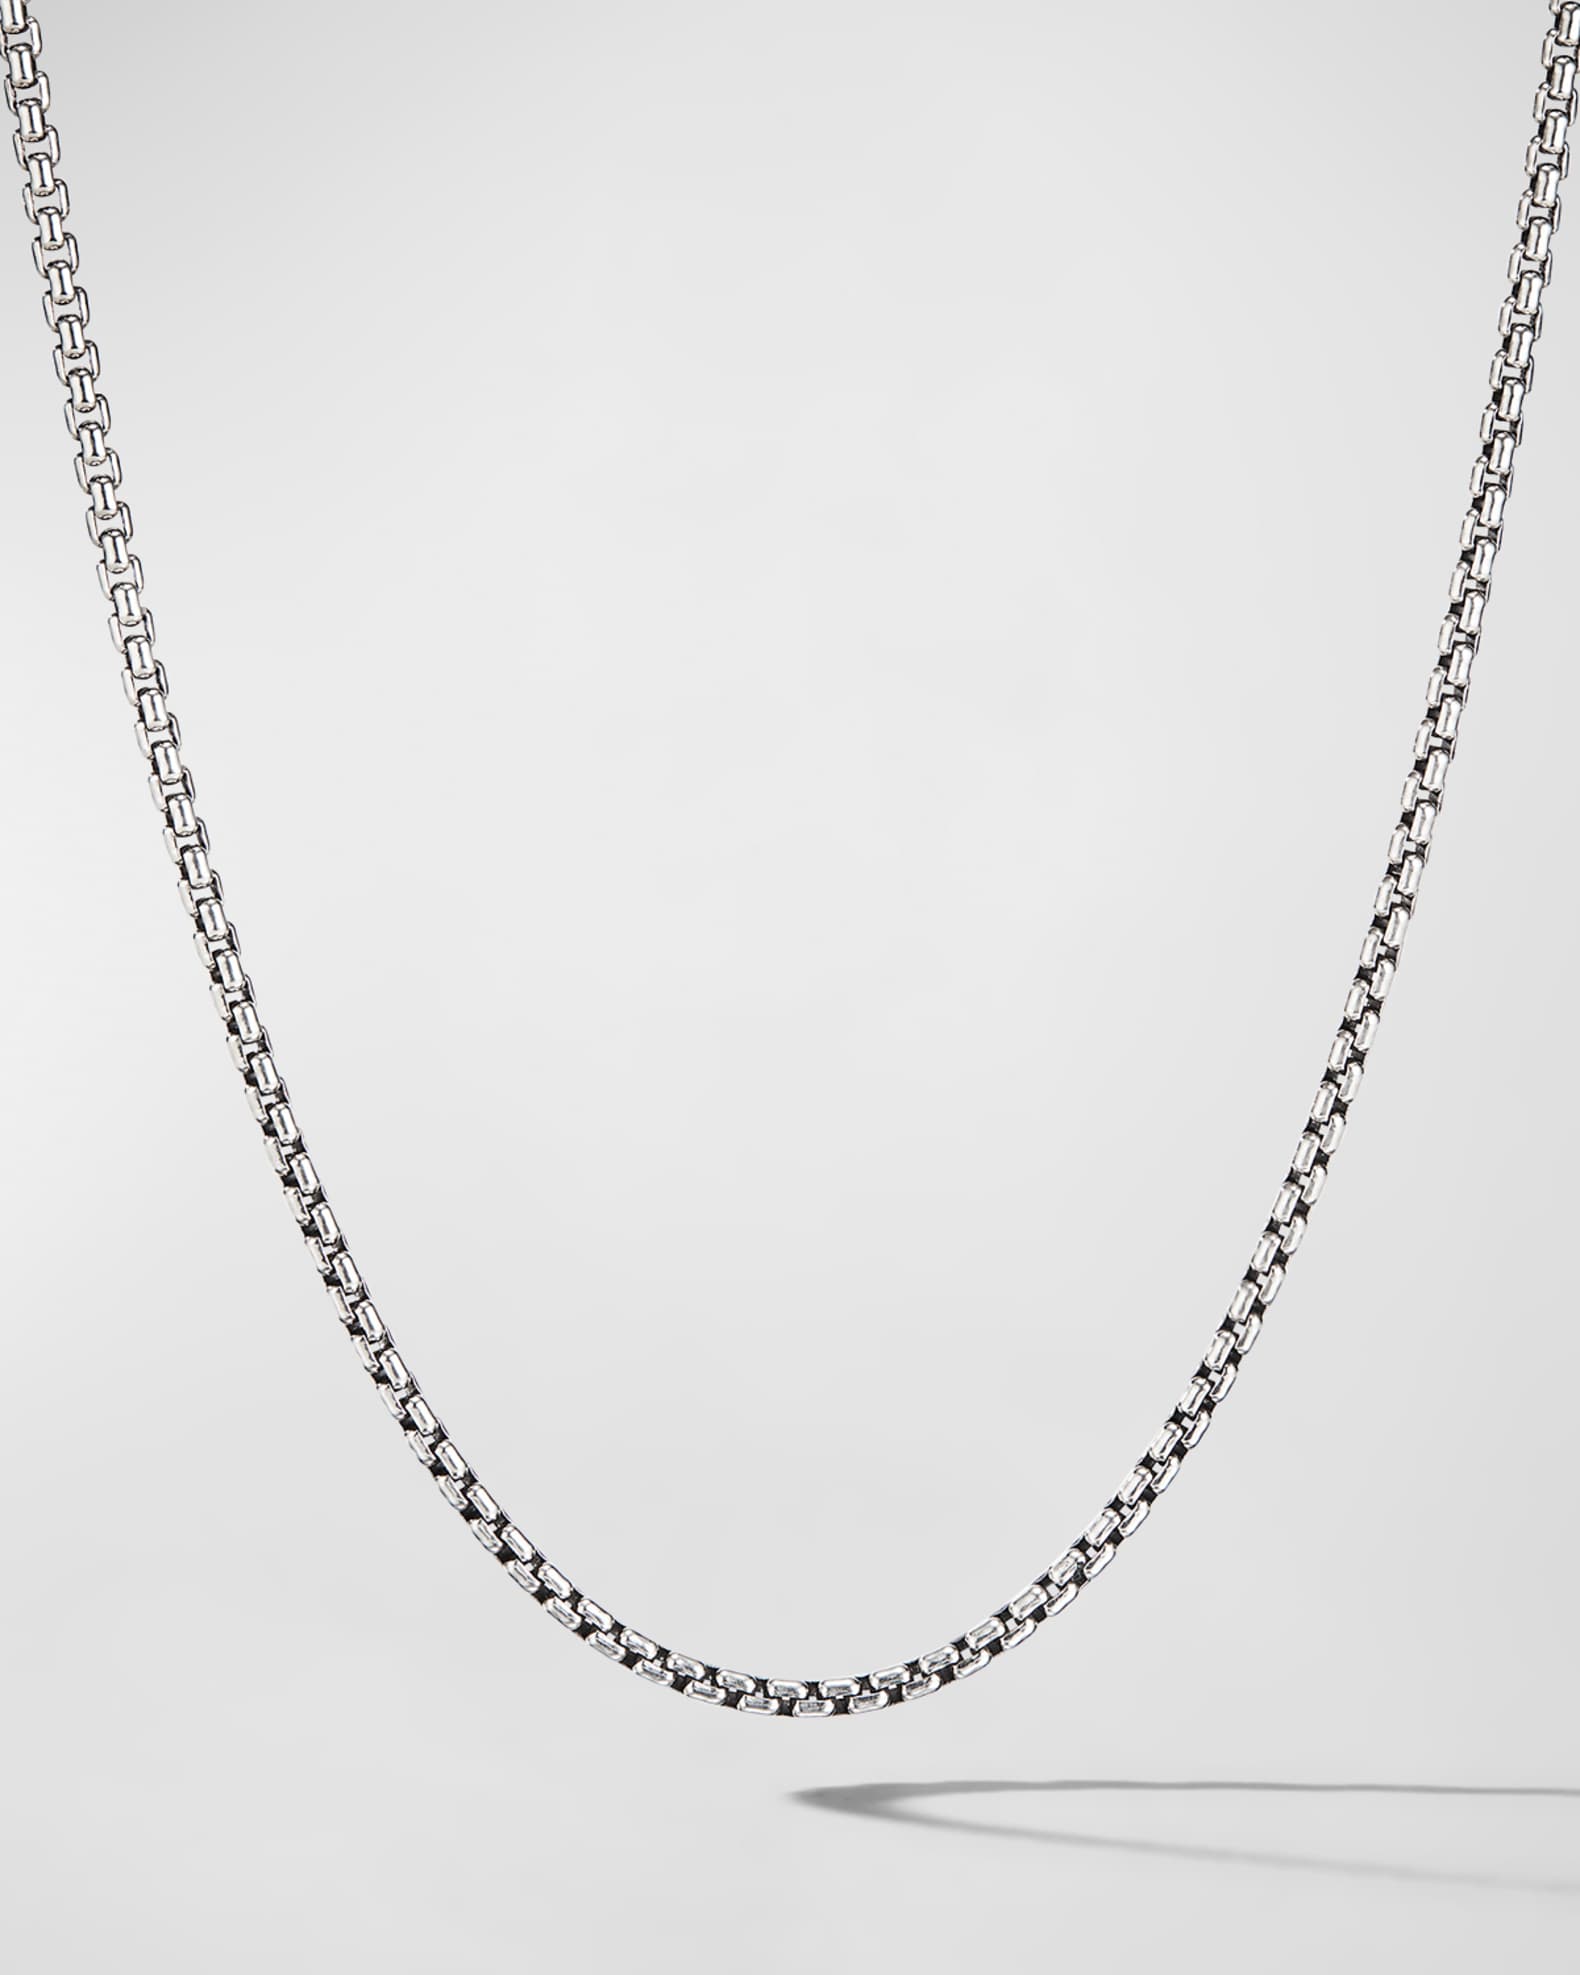 David Yurman Men's Small Silver Box Chain Necklace, 22L